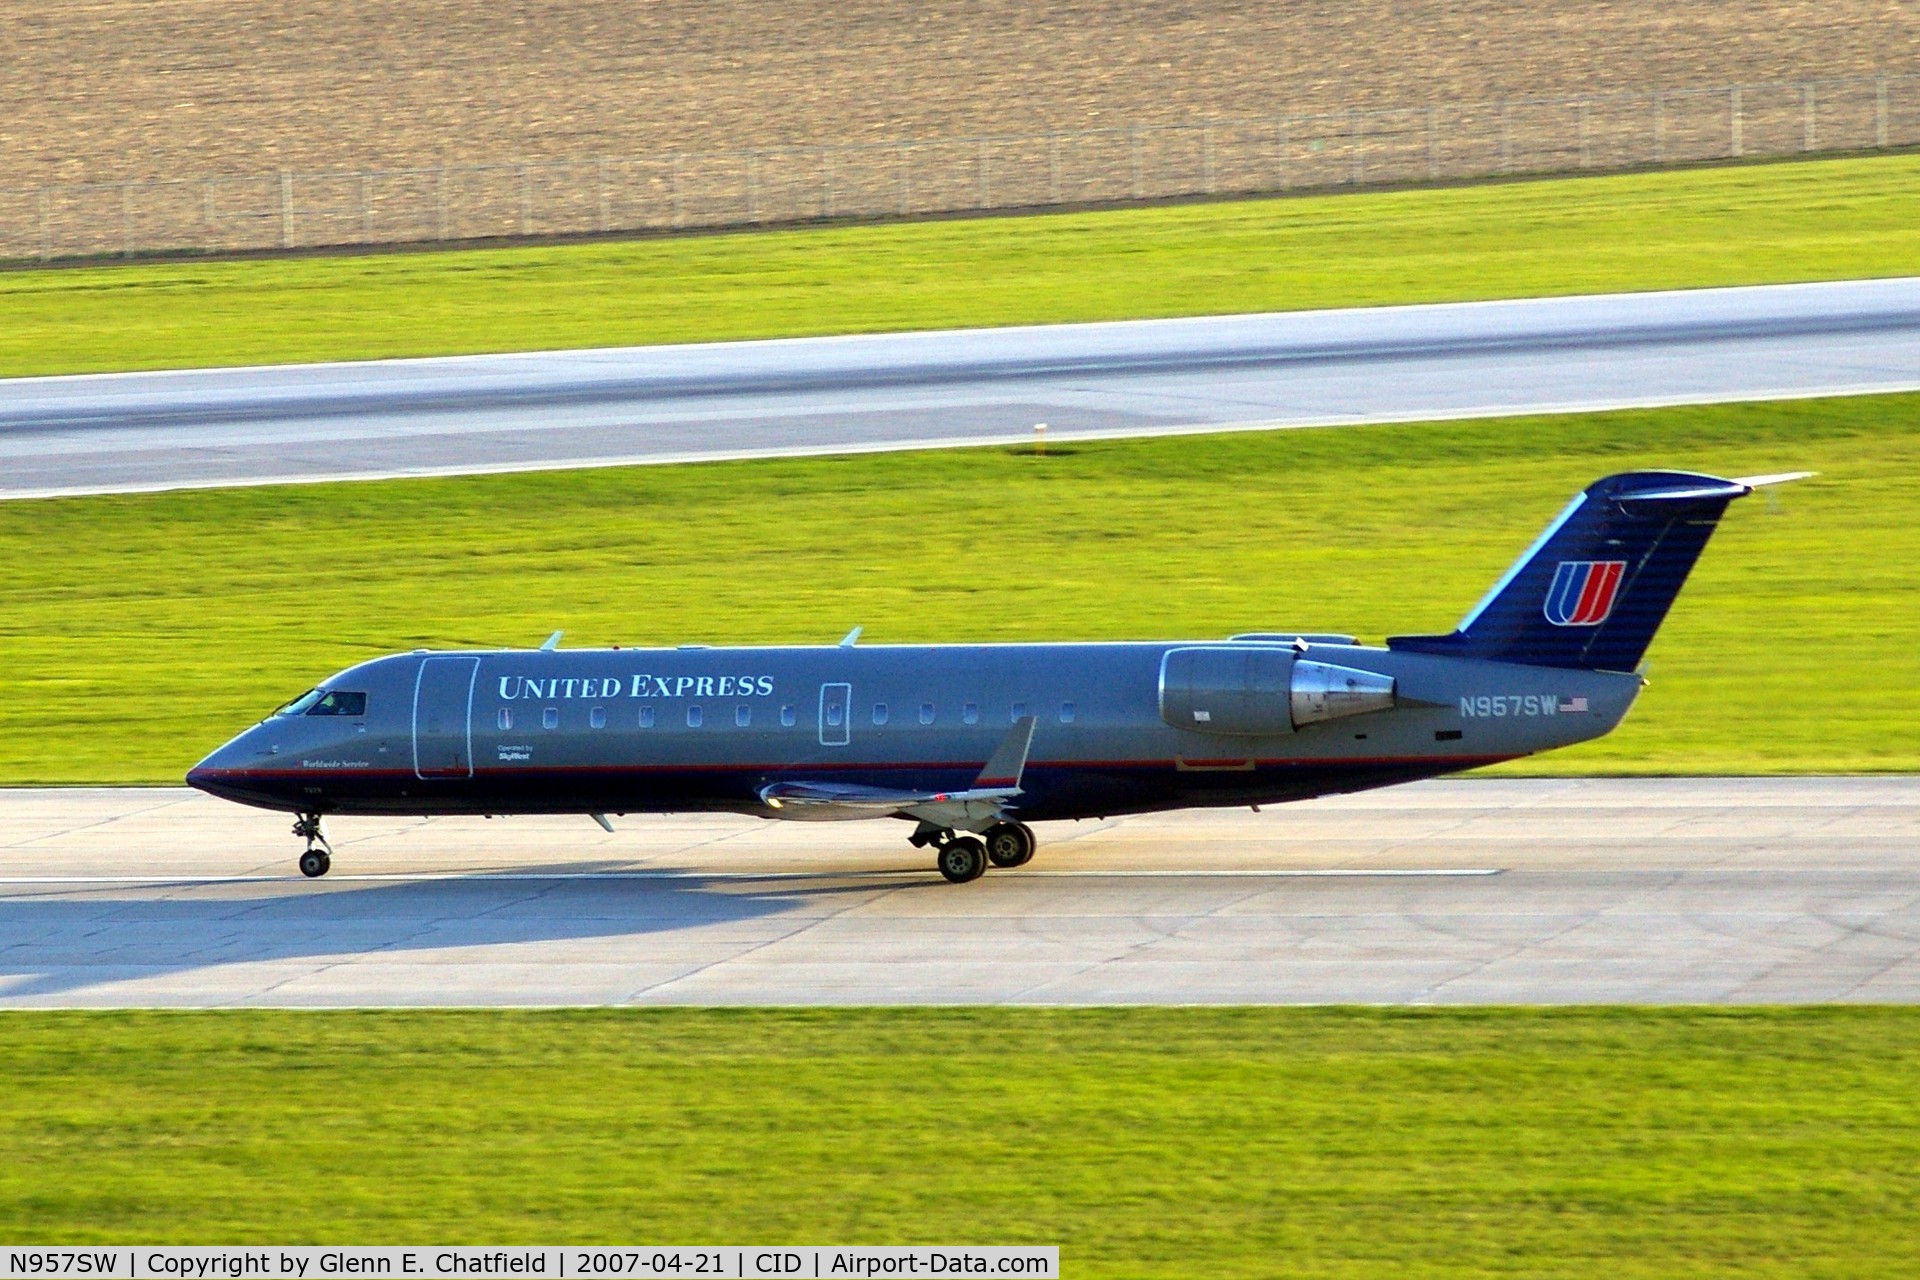 N957SW, 2003 Bombardier CRJ-200LR (CL-600-2B19) C/N 7829, Departing runway 13